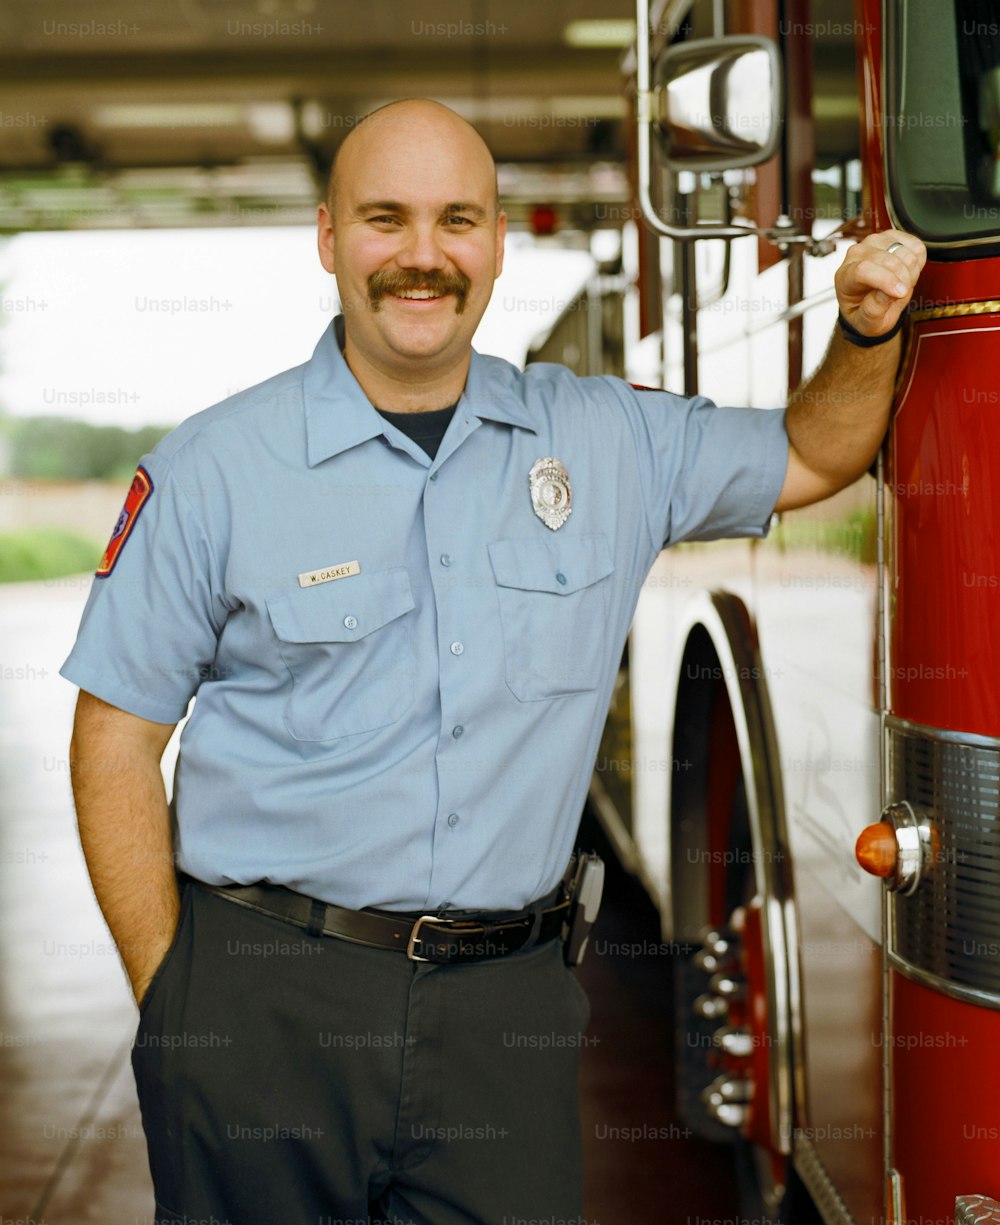 a man in uniform standing next to a fire truck